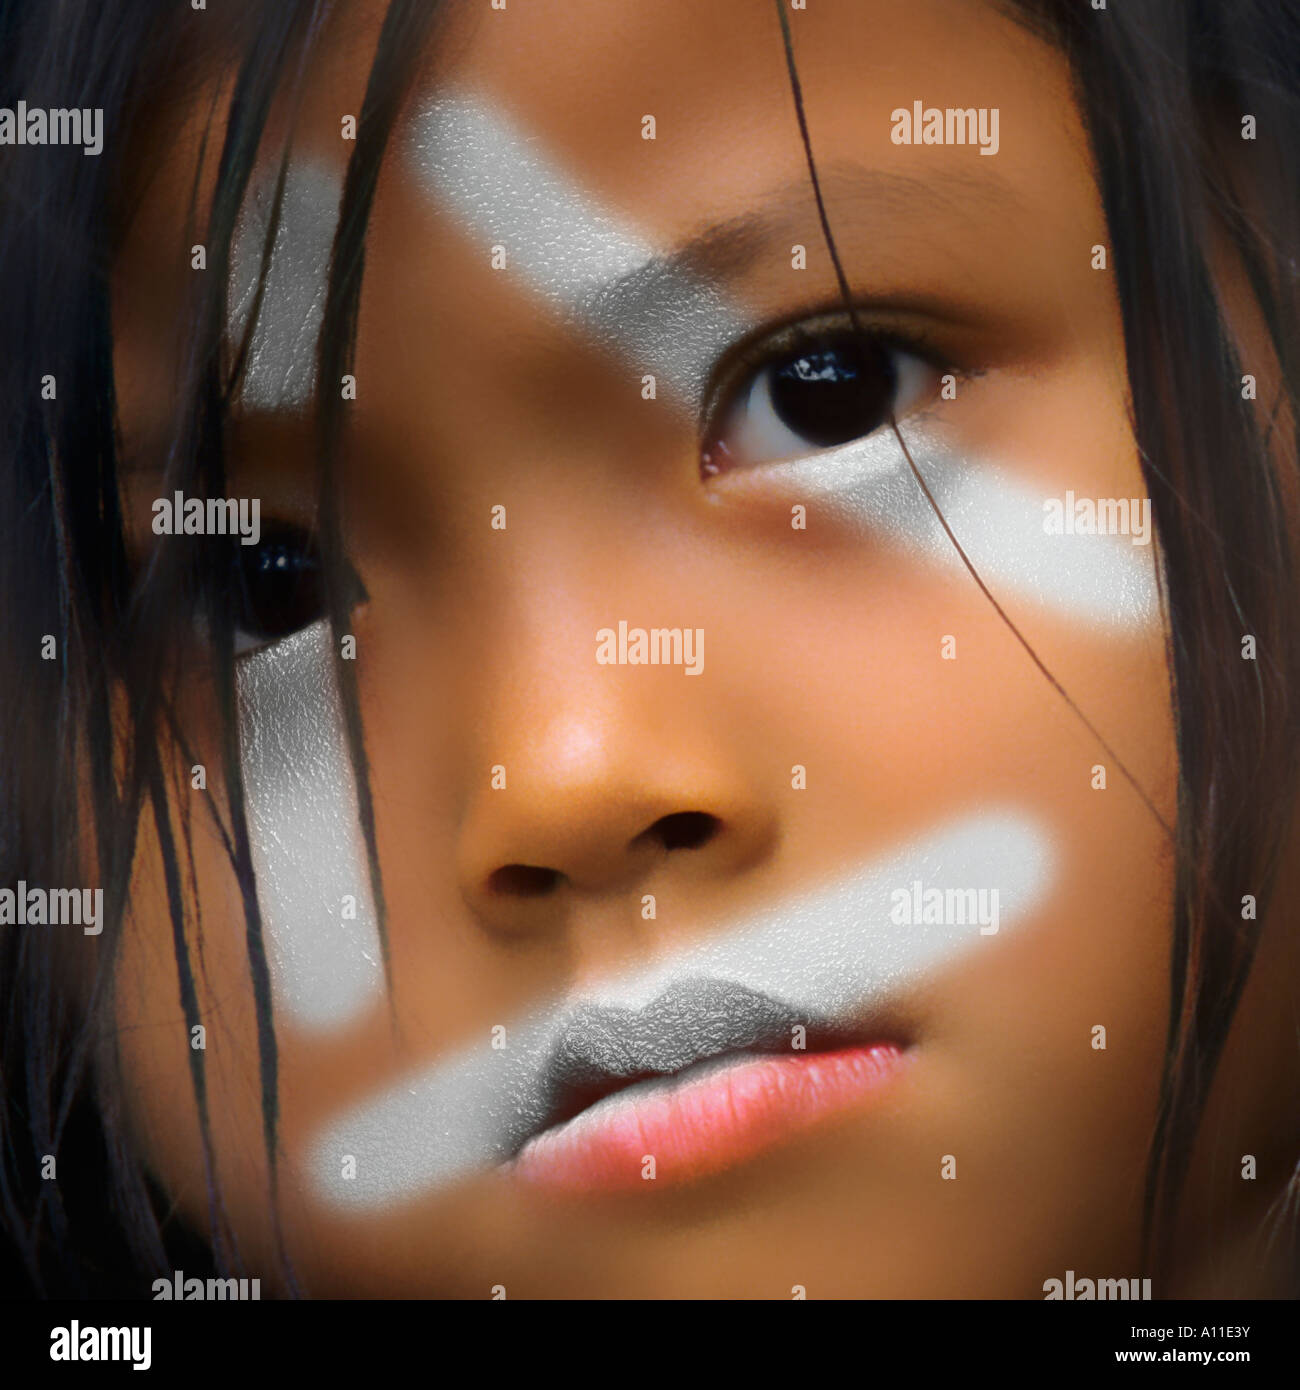 An Asian girl having made up her face. Fillette asiatique au visage décoré. Stock Photo